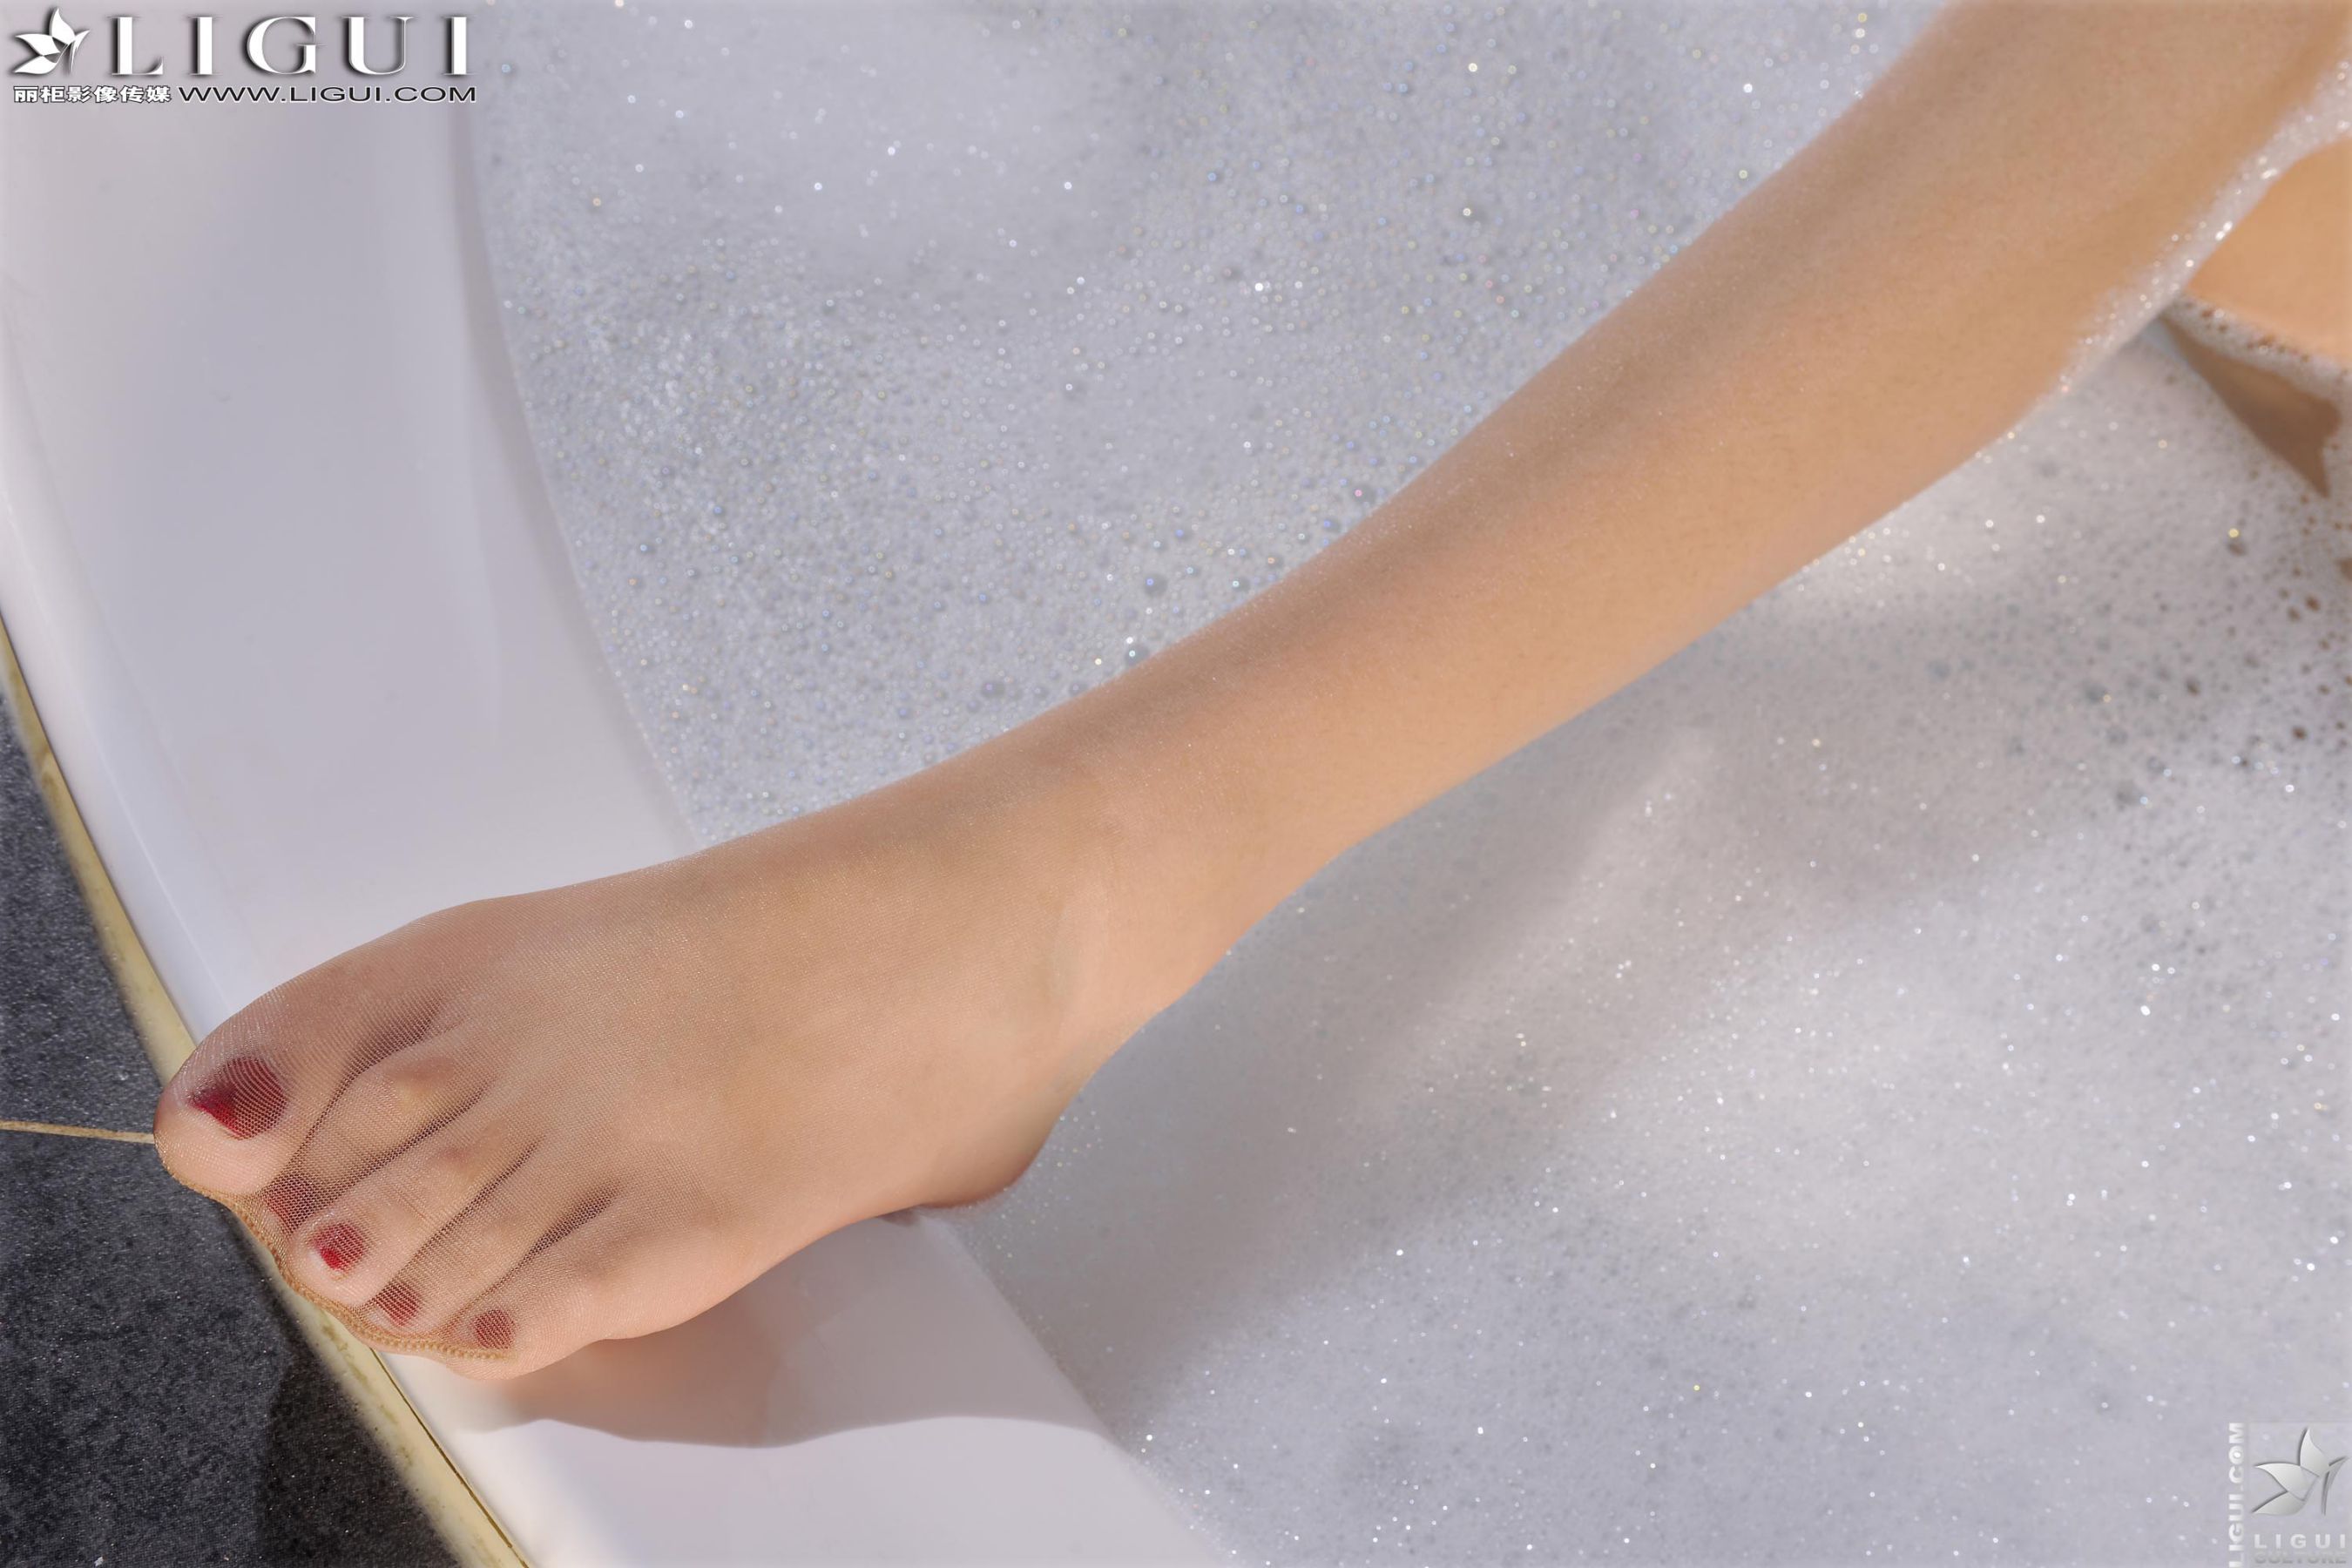 [丽柜LiGui] Model Wen Xin “Bath Towel Wraps Her Breasts and Wet Body” Photo Pictures of Beautiful Legs and Jade Feet